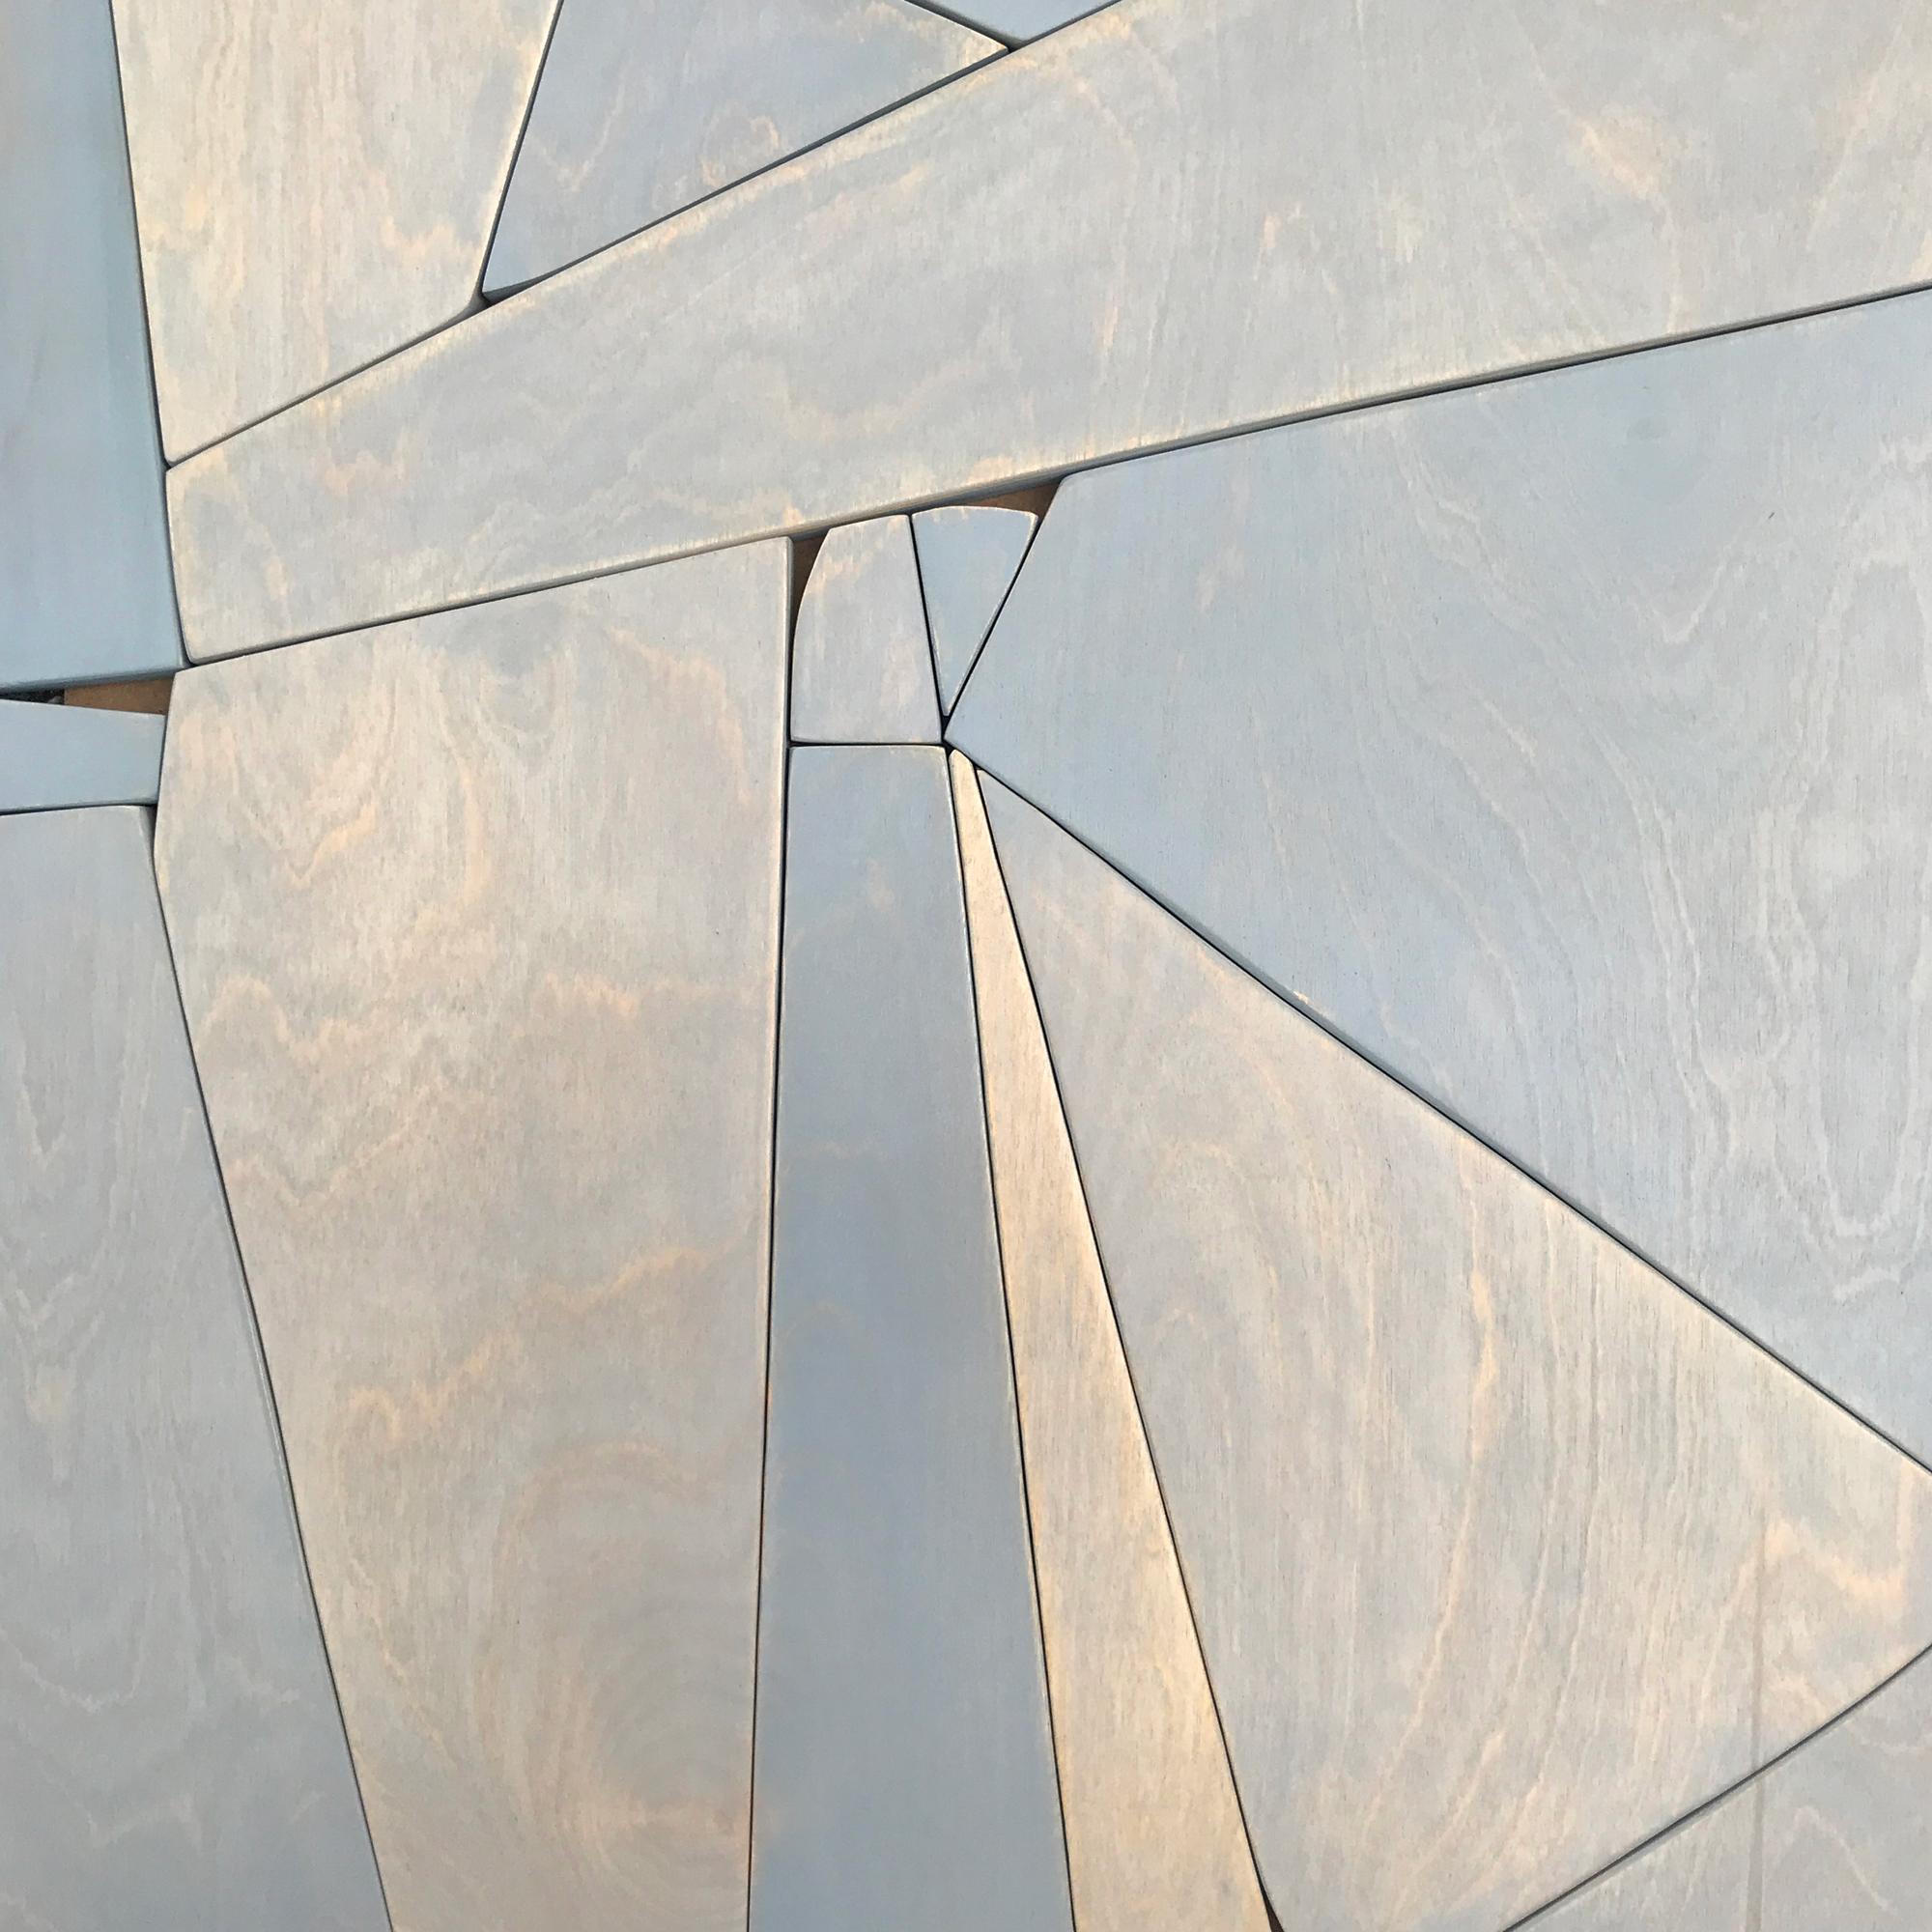 Rollkragenpullover II (moderne abstrakte Wandskulptur mit minimalem geometrischem Design in neutralen Farbtönen) – Sculpture von Scott Troxel